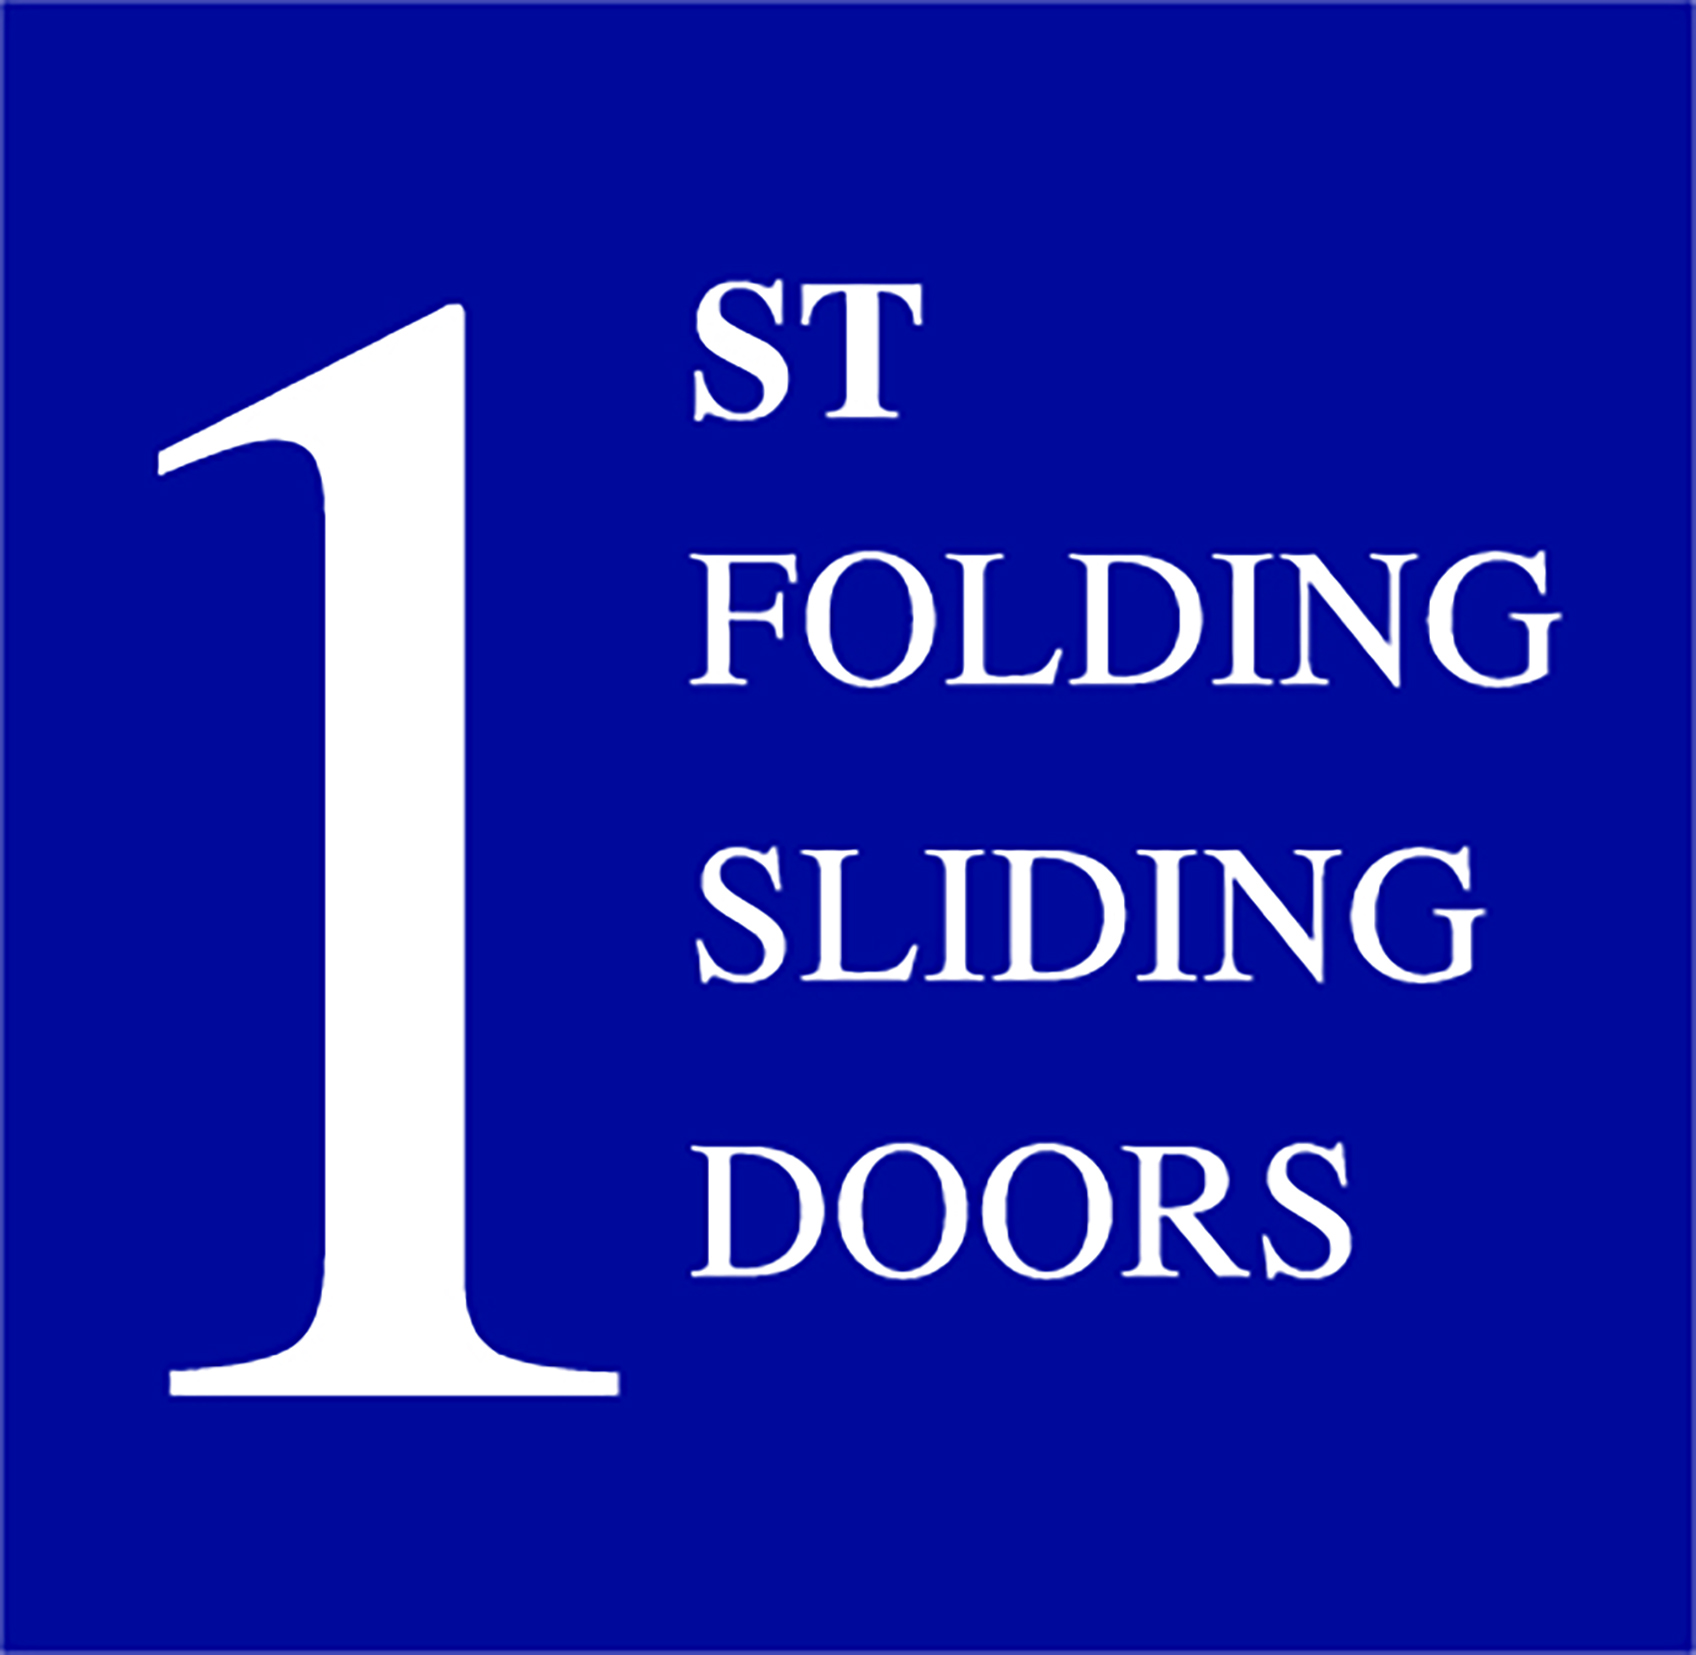 1st Folding Sliding Doors Ltd (Greenford)